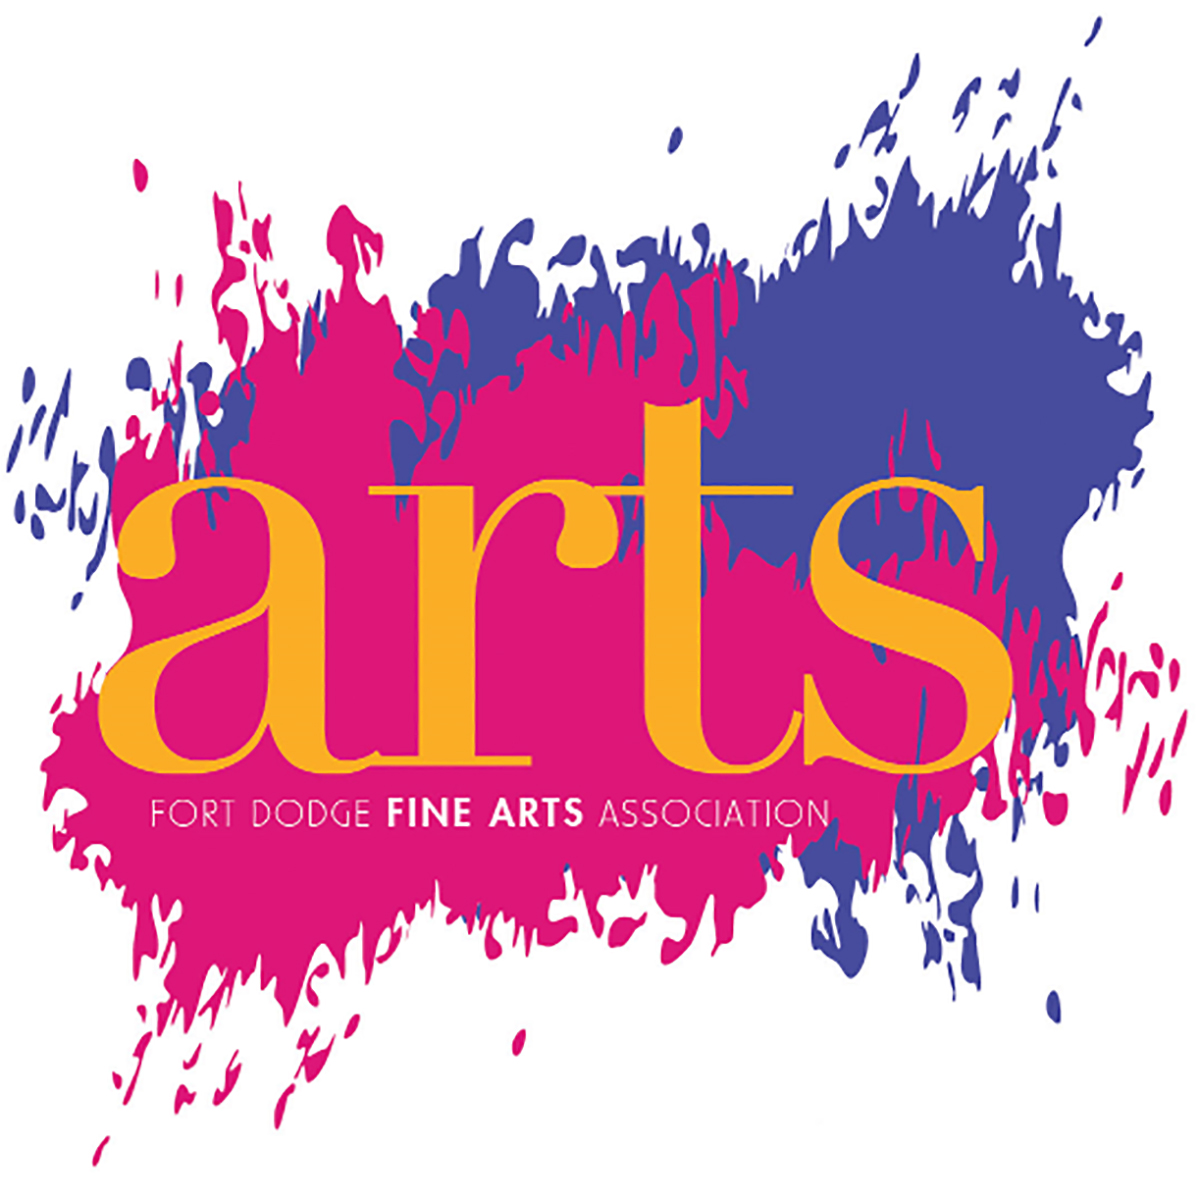 Fort Dodge Fine Arts Association's Logo